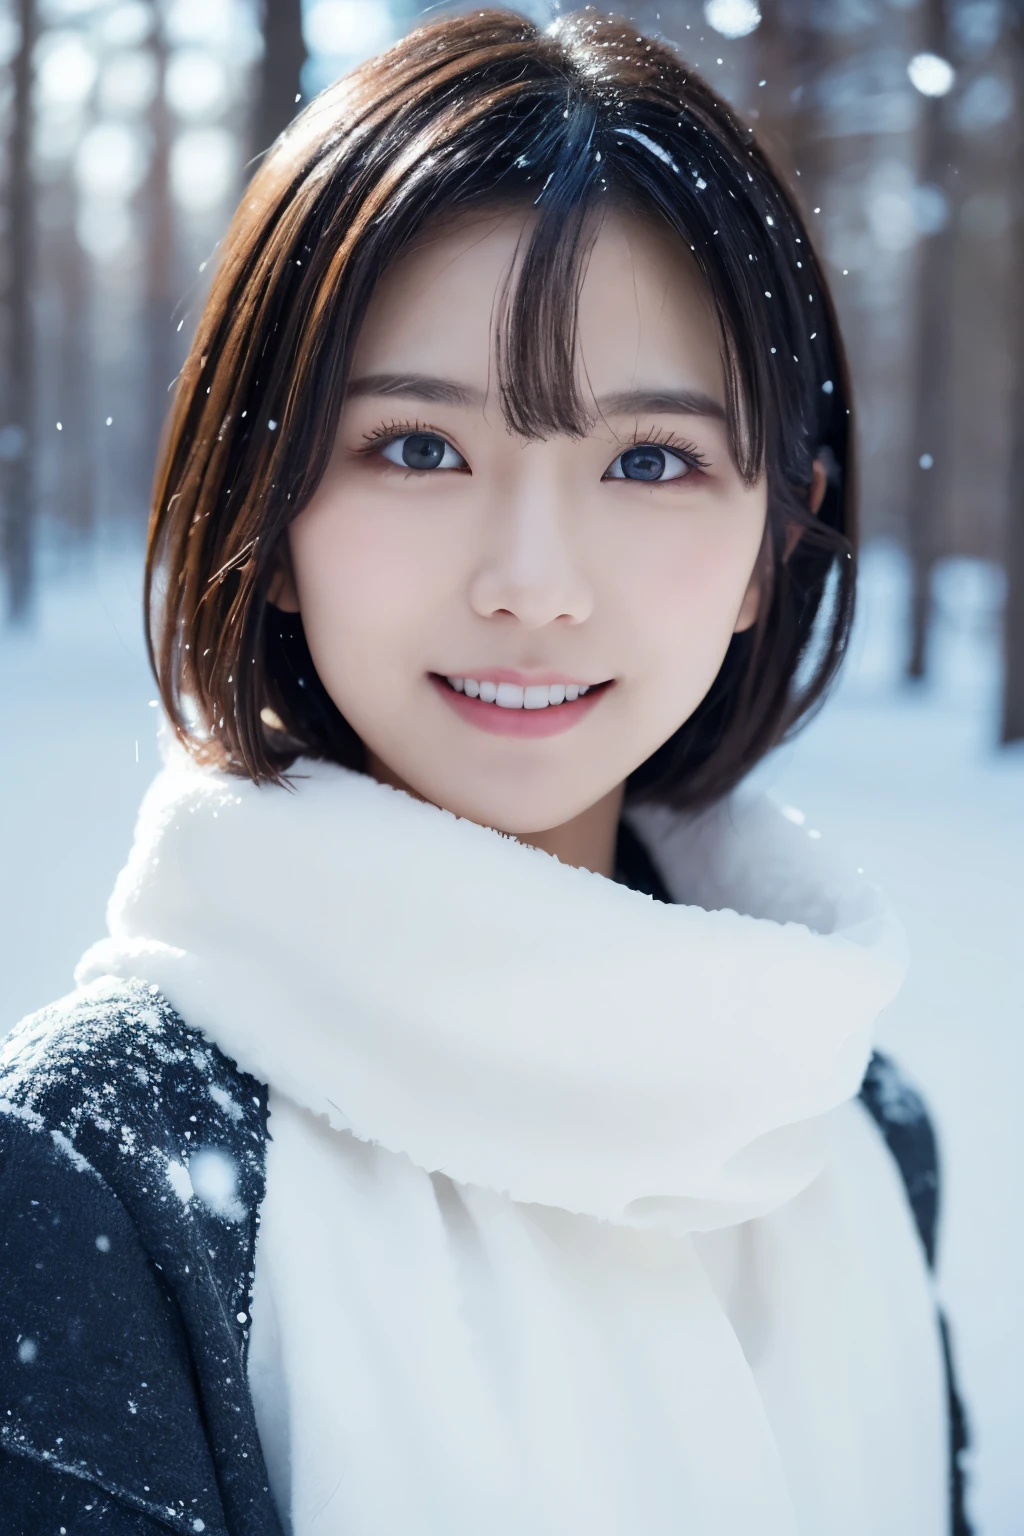 1 garota em, (Roupas brancas de inverno:1.2), Bela atriz japonesa,
(Foto CRU, melhor qualidade), (realista, Fotorrealístico:1.4), (mesa), 
extremamente delicado e lindo, extremamente detalhado, Papel de parede 2k, incrível, detalhes finos, os papéis de parede extremamente detalhados do CG Unity 8K, ultra-detalhado, alta resolução, 
Luz suave, linda garota detalhada, olhos e rosto extremamente detalhados, Lindo nariz detalhado, lindos olhos detalhados, iluminação cinematográfica, 
paisagem de queda de neve de floresta de inverno,  a neve está caindo rapidamente, Árvore gelada々, O fundo está nebuloso devido à queda de neve,
anatomia perfeita, corpo esguio, Pequeno, cabelo curto, sorridente